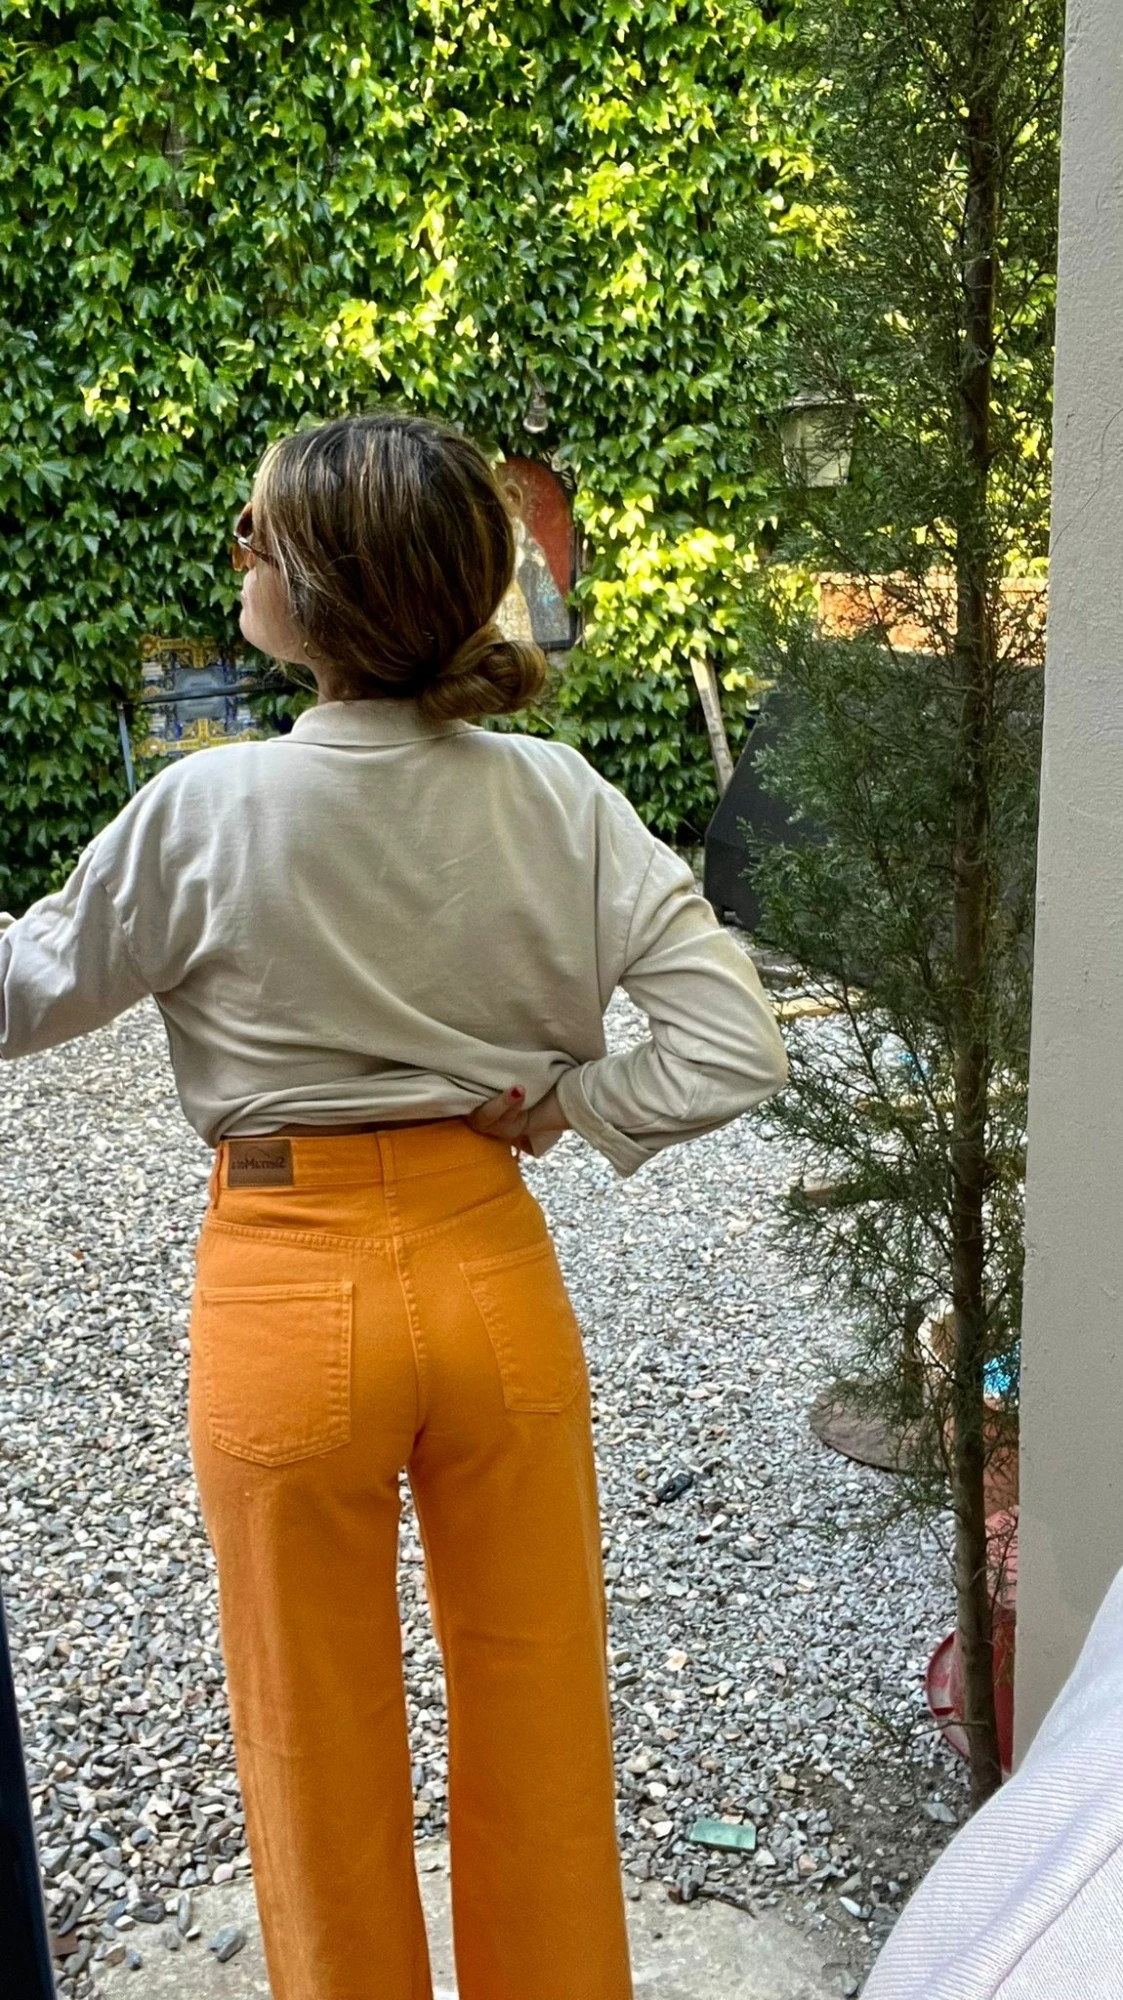 Colorful Jean naranja xs